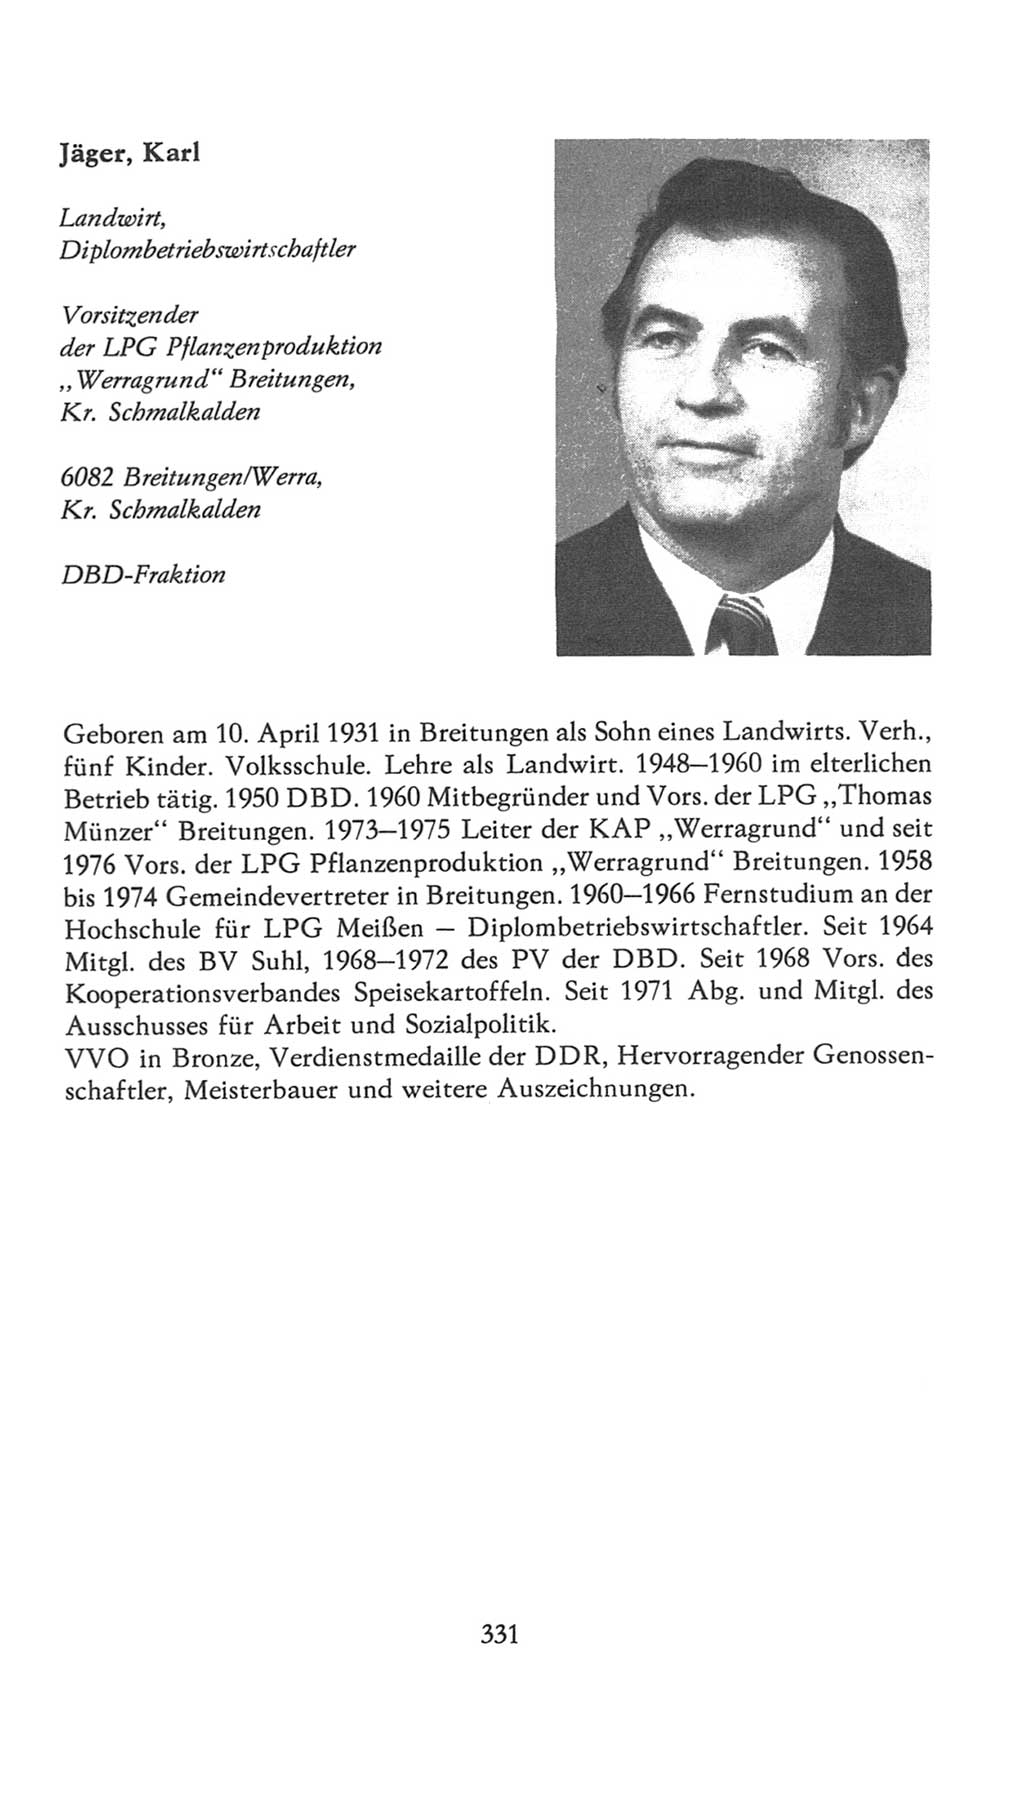 Volkskammer (VK) der Deutschen Demokratischen Republik (DDR), 7. Wahlperiode 1976-1981, Seite 331 (VK. DDR 7. WP. 1976-1981, S. 331)